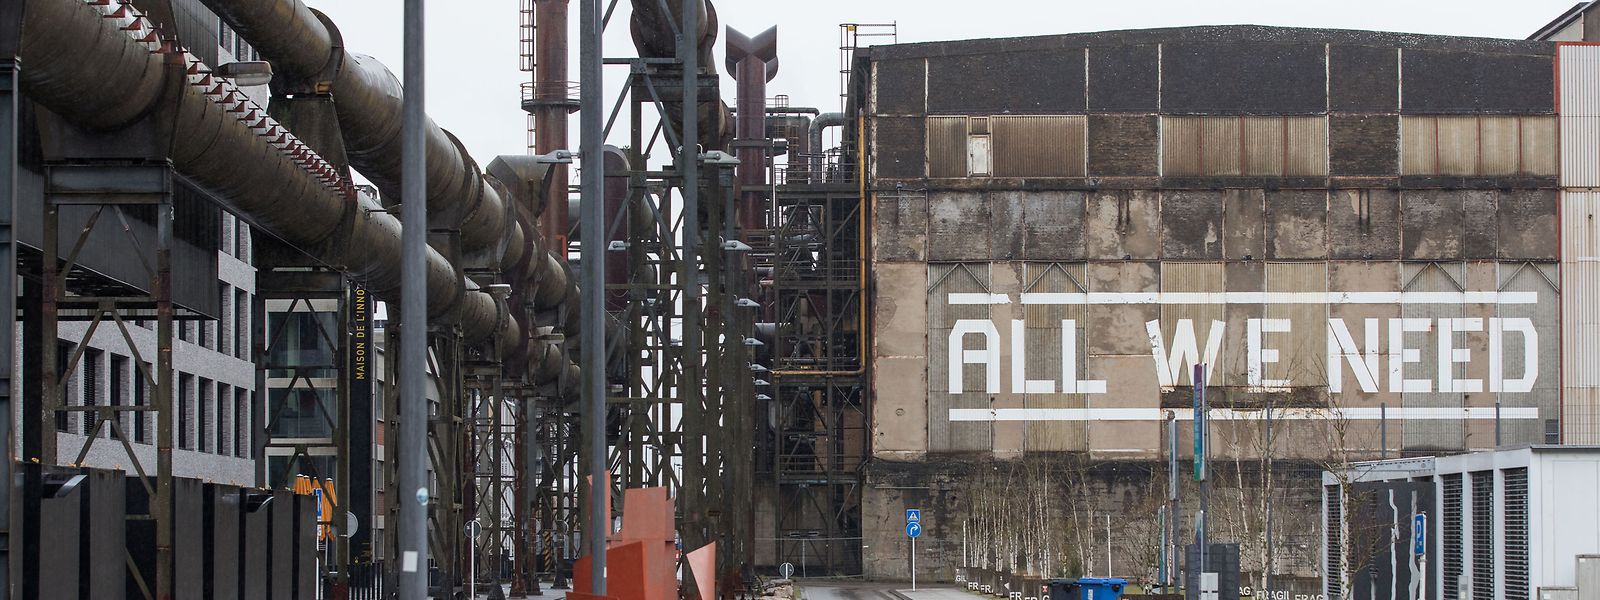 Der Schriftzug „All we need“ auf der Fassade der Gebläsehalle in Belval ist das richtige Stichwort. Alles, was die Vereinigung Industriekultur-CNCI nämlich braucht, ist die Halle.